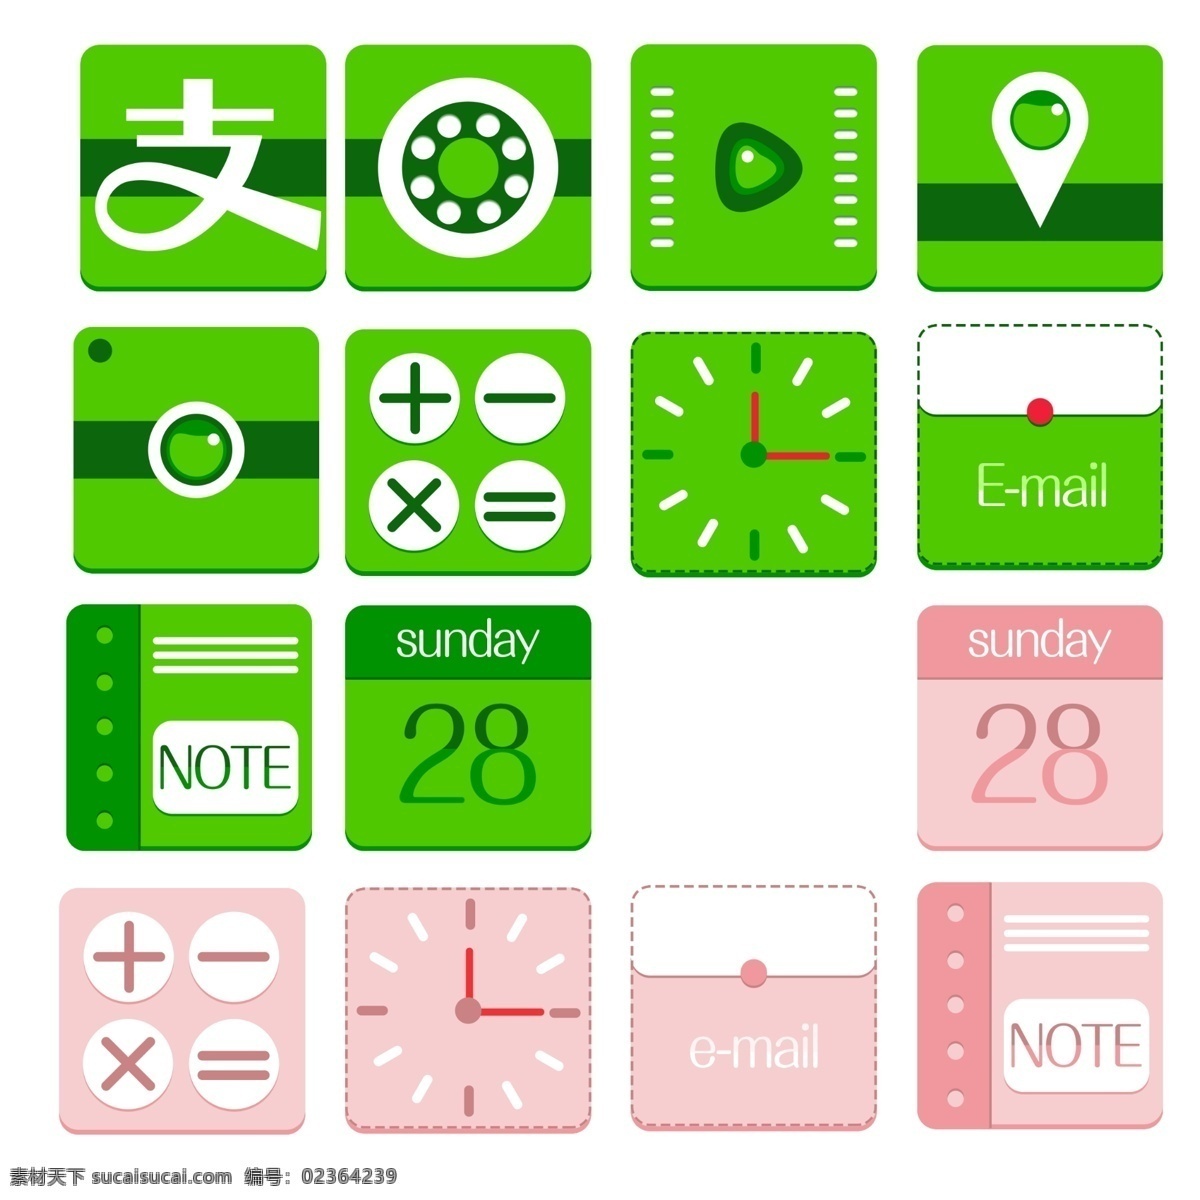 半 扁平 手机 app 图标 半扁平 简单 psd素材 移动端 手机app 软件 清新 绿色 粉色